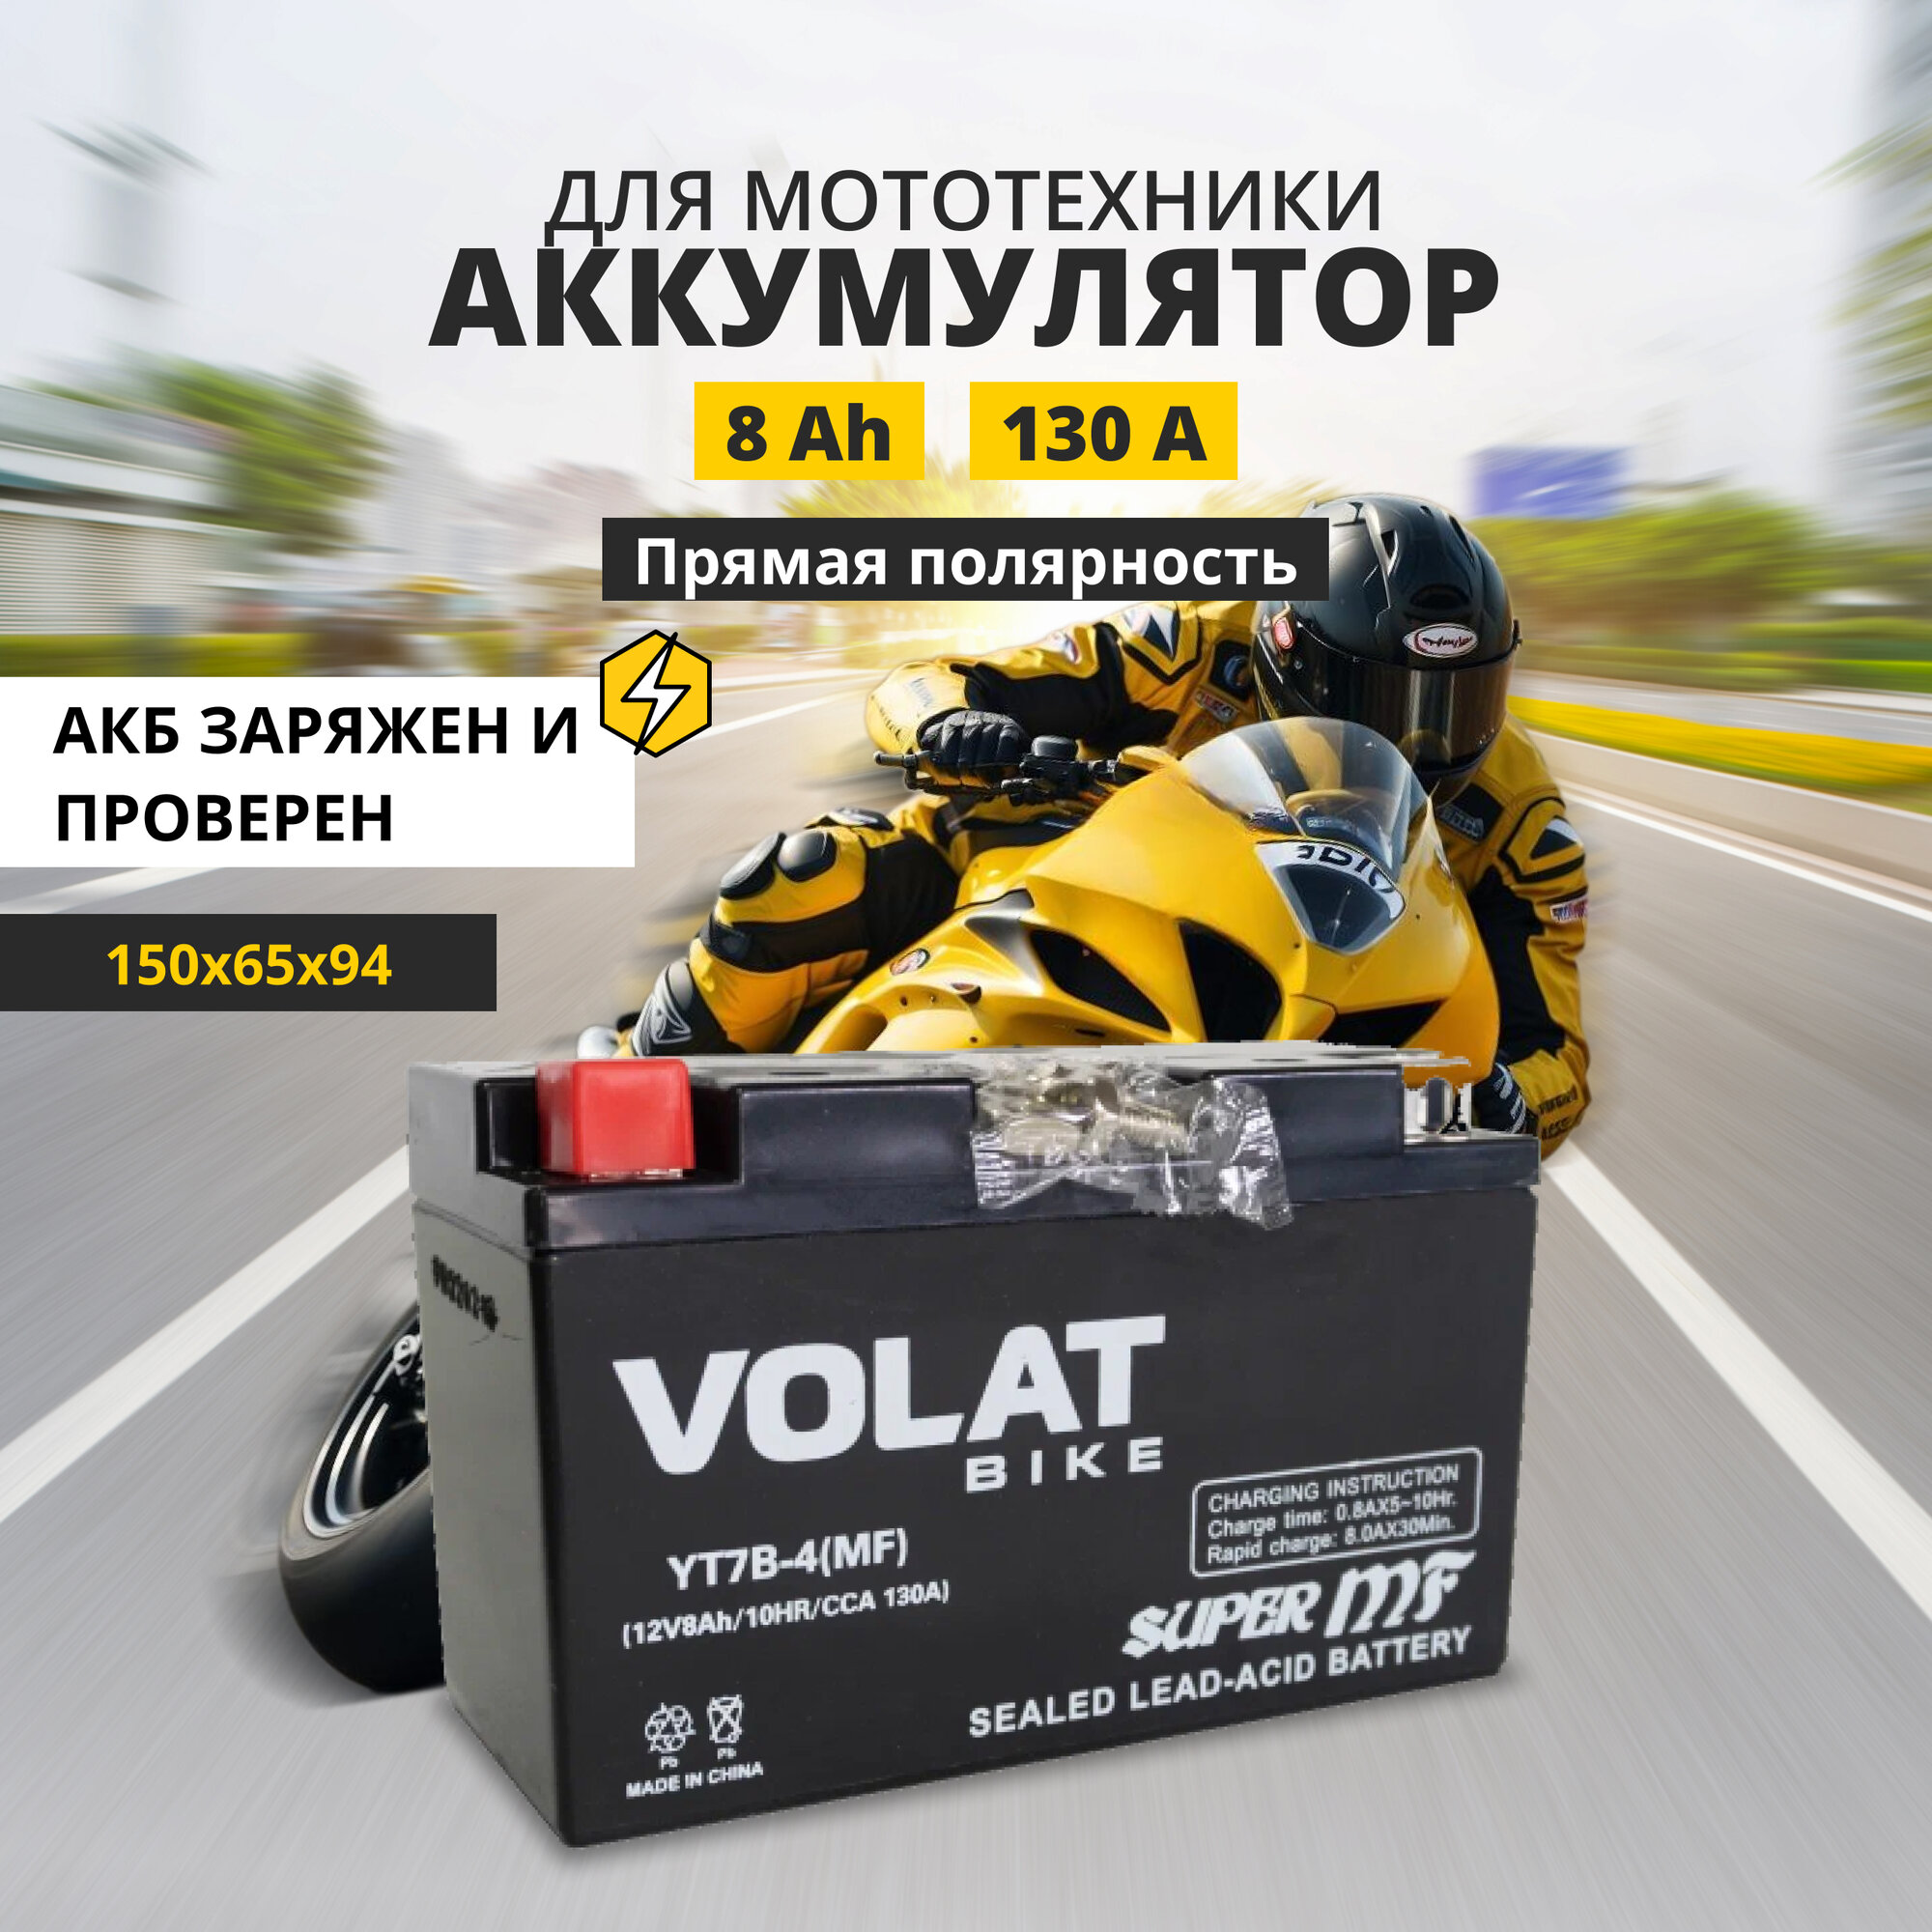 Аккумулятор для мотоцикла 12v Volat YT7B-4(MF) прямая полярность 8 Ah 130 A AGM, акб на скутер, мопед, квадроцикл 150x65x94 мм